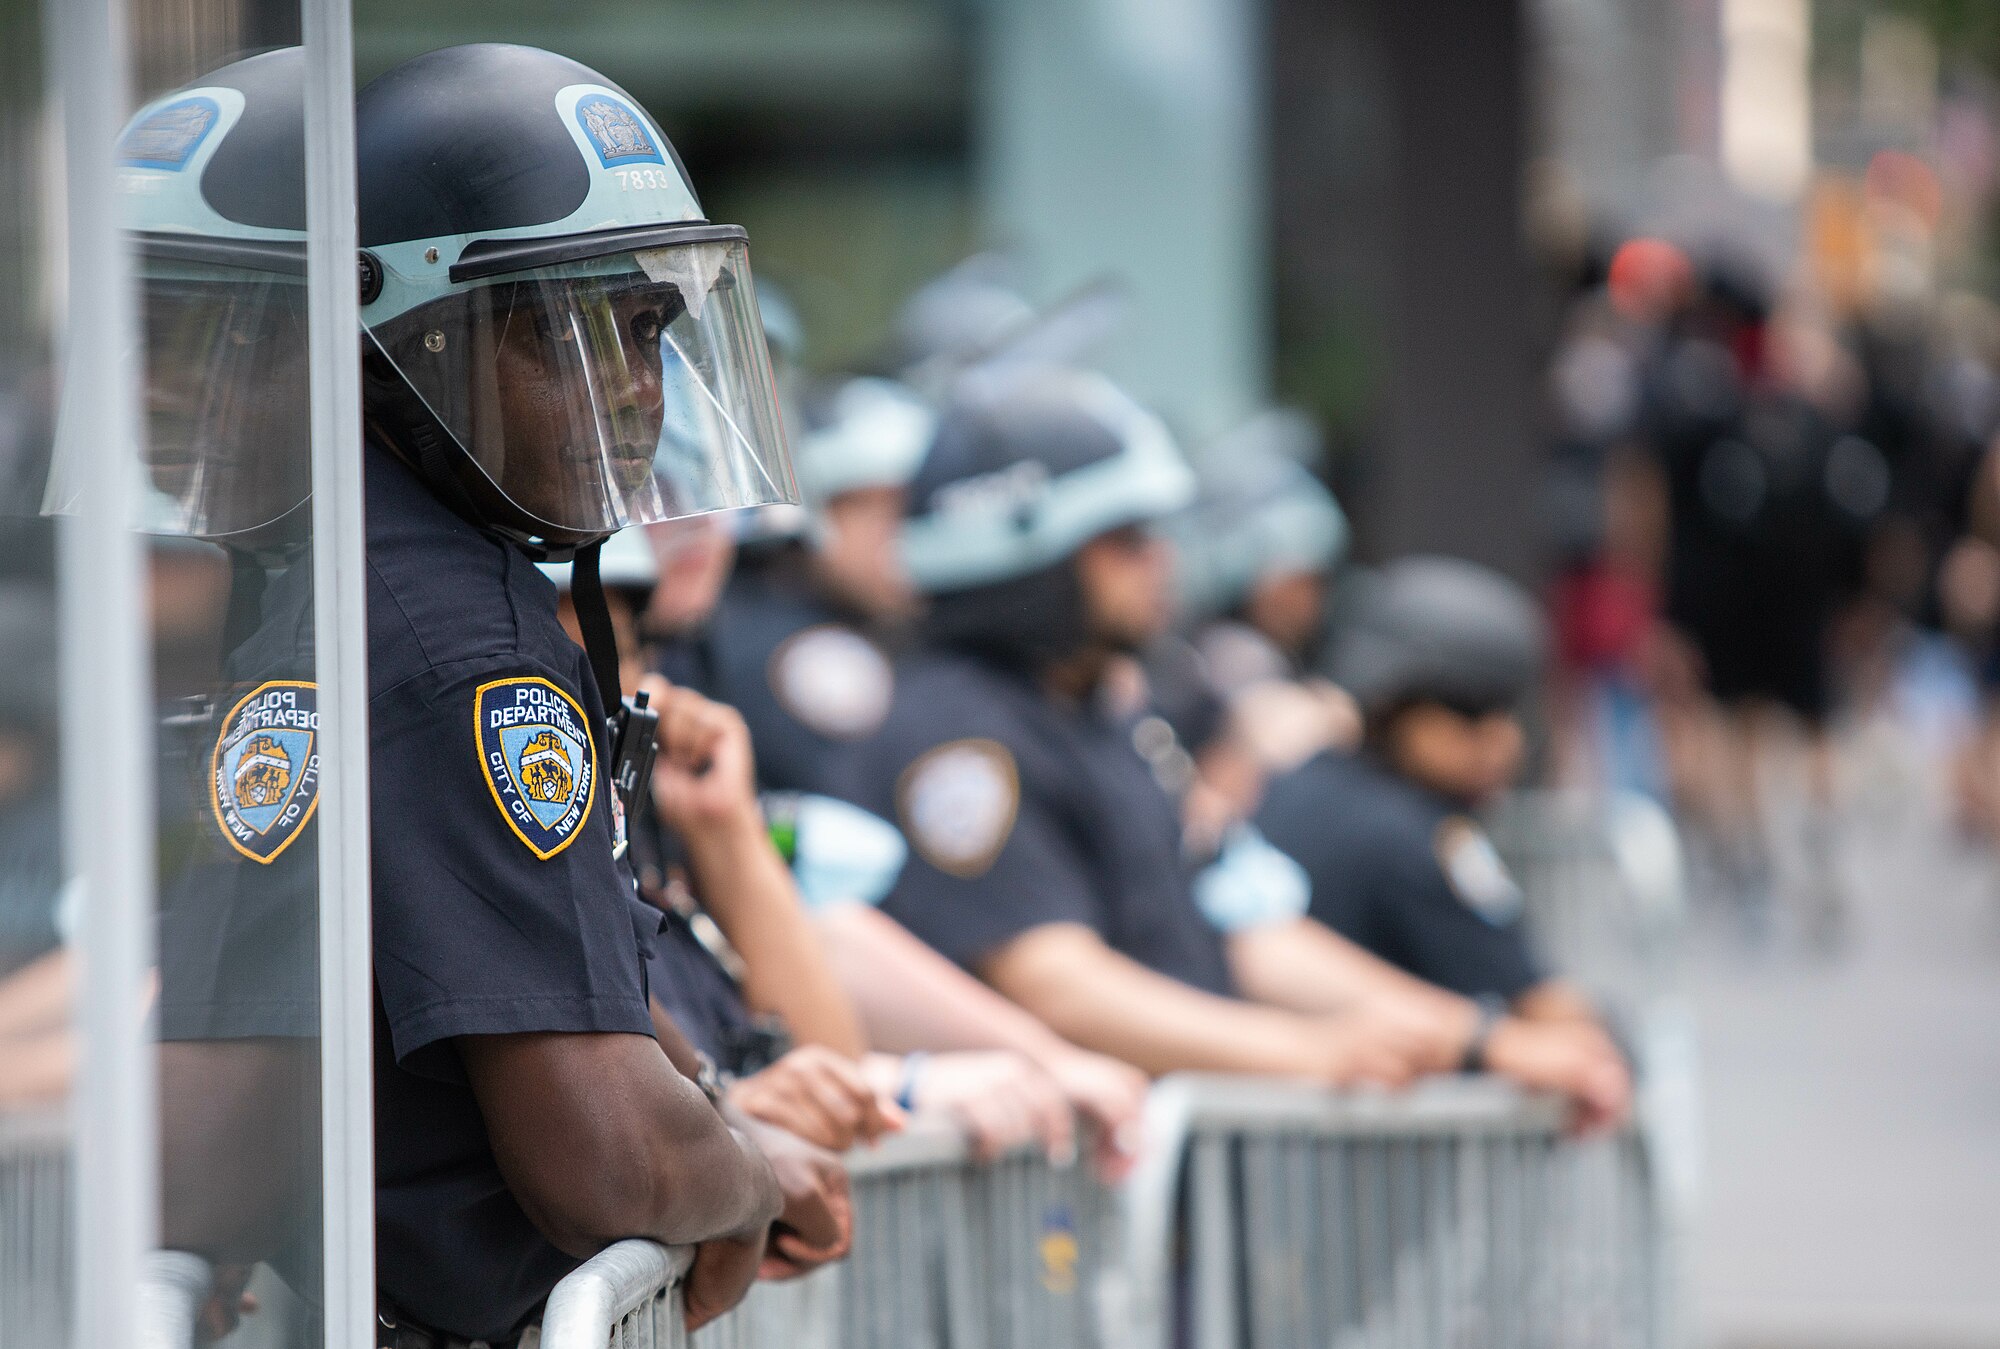 Oficiales de policía de la ciudad de Nueva York con equipo antidisturbios. Foto: Anthony Quintano/Creative Commons Attribution 2.0.